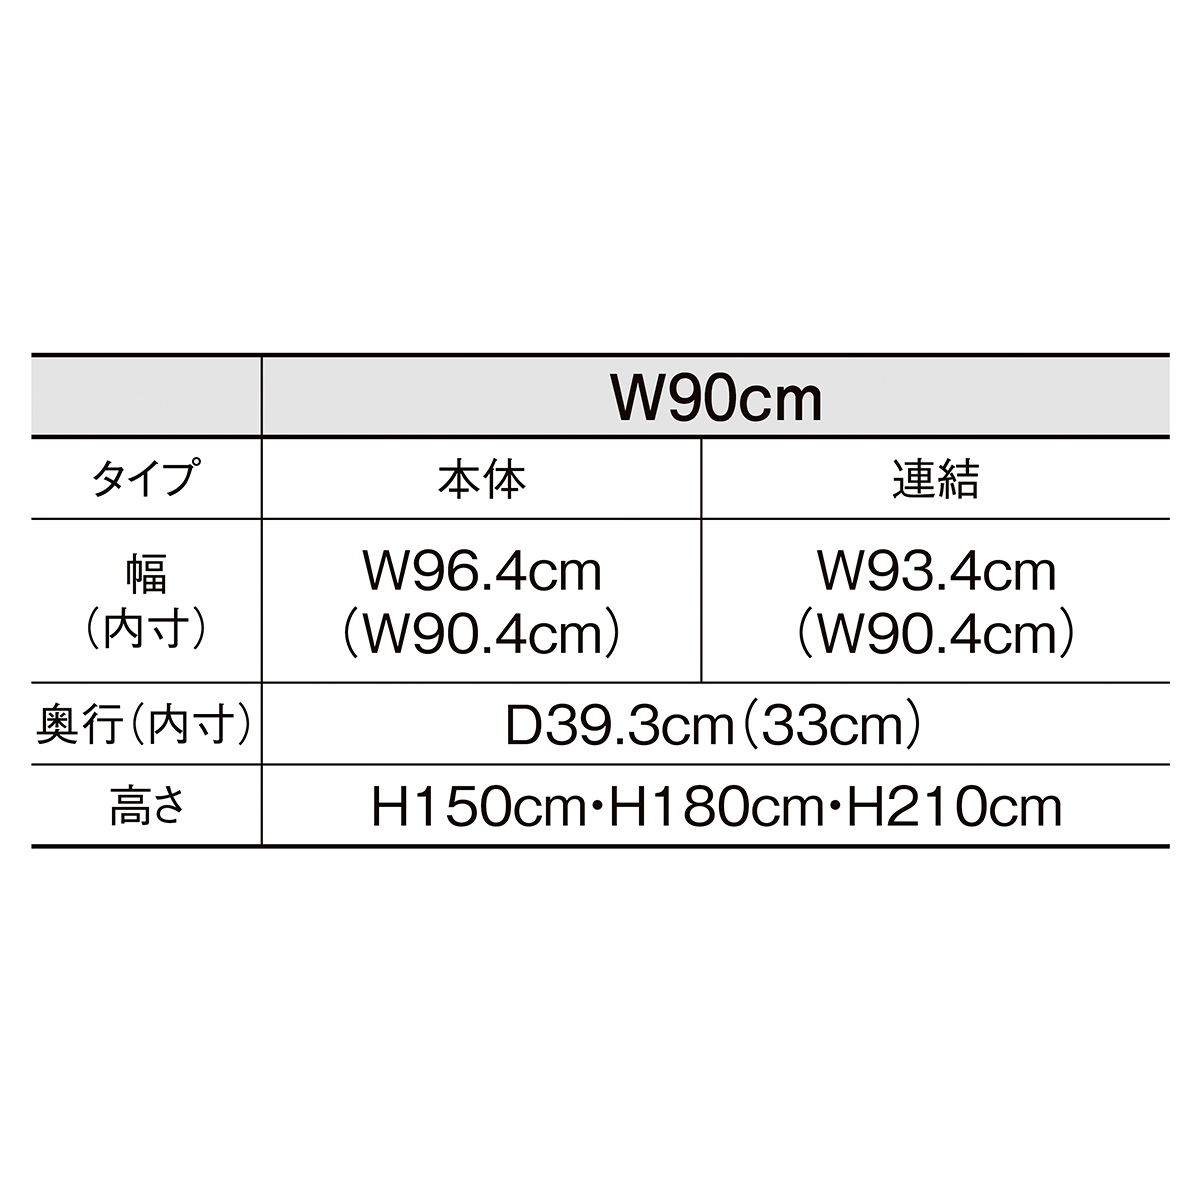 初回限定 ネットタイプ W90cm 本体 ブラック H180cm